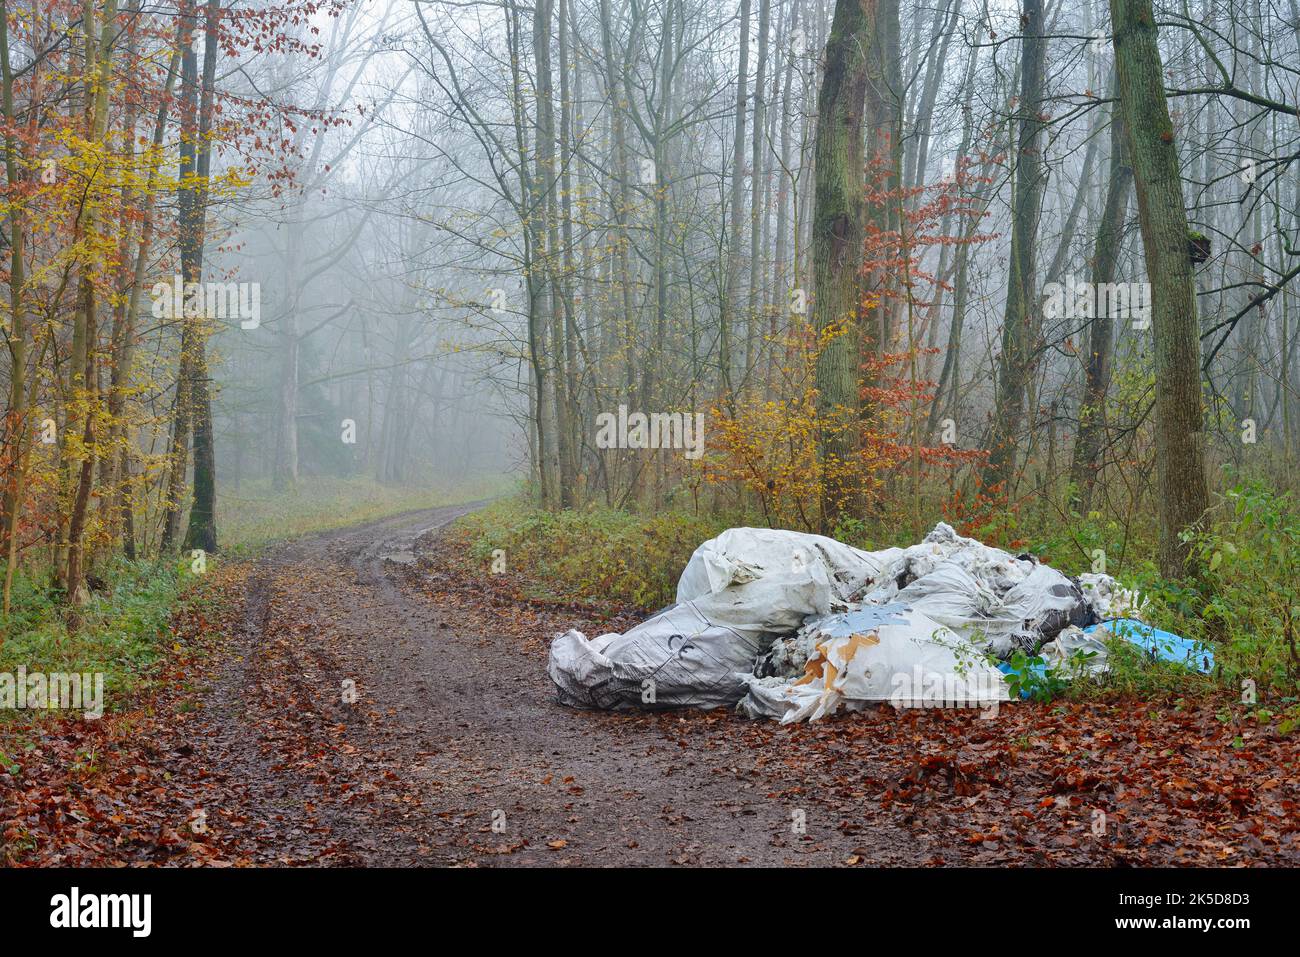 Inquinamento ambientale, smaltimento illegale di rifiuti su un percorso forestale, Renania settentrionale-Vestfalia, Germania Foto Stock